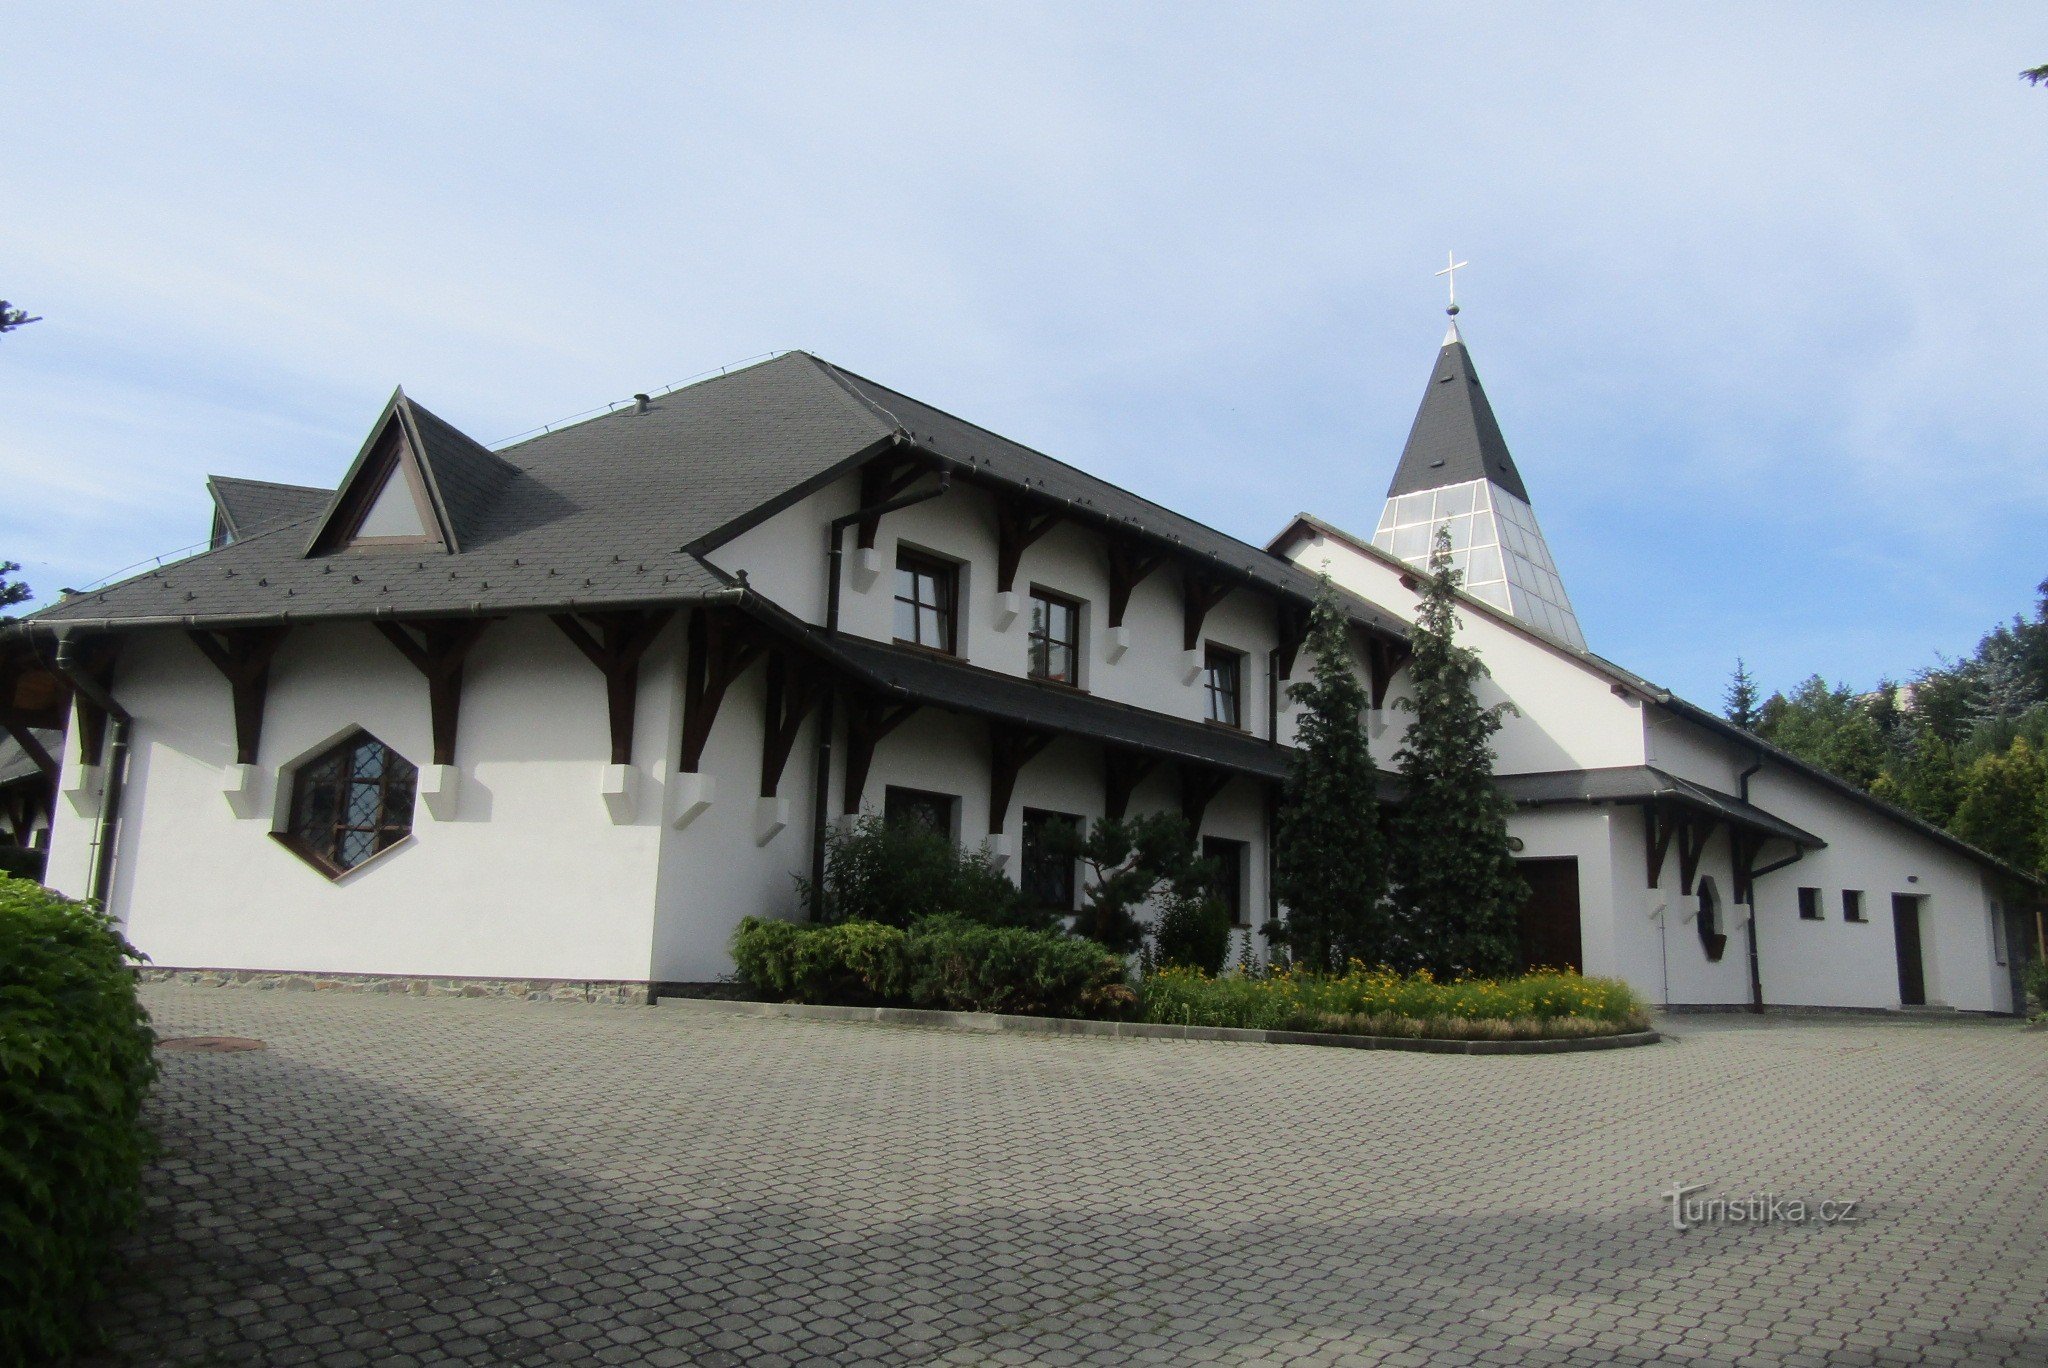 Samostan sv. Agnes Češka